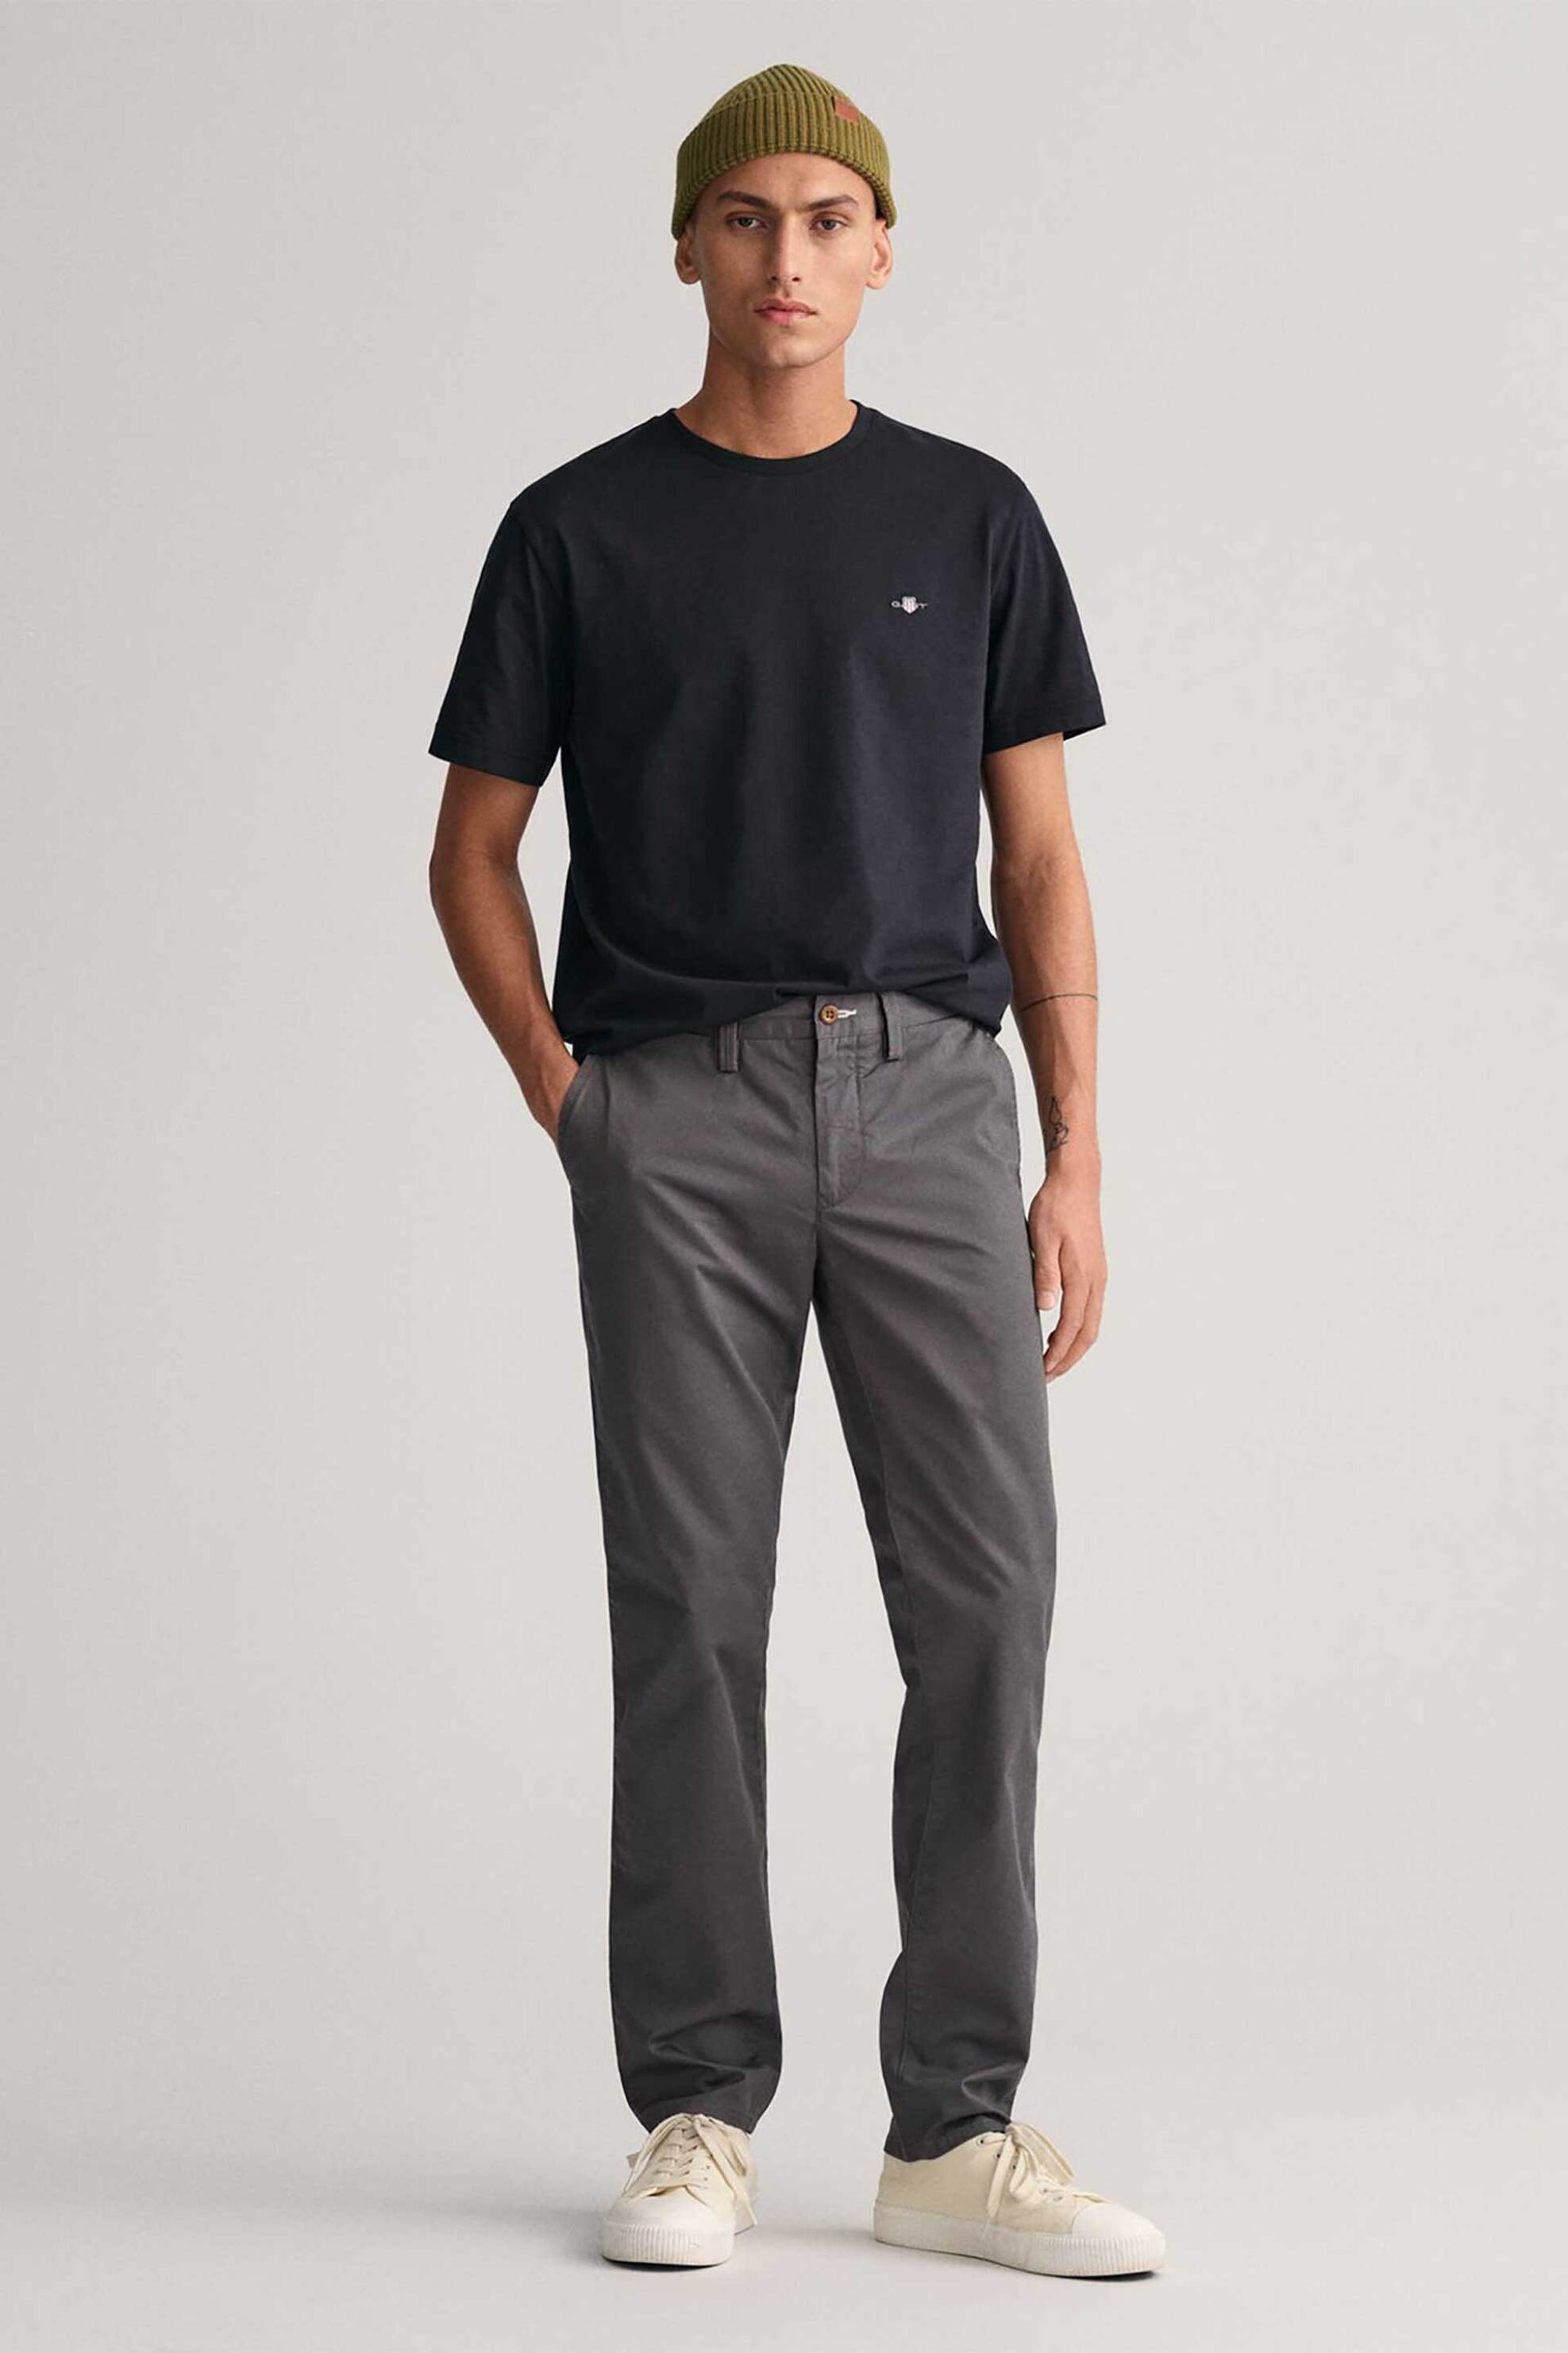 Ανδρική Μόδα > Ανδρικά Ρούχα > Ανδρικά Παντελόνια > Ανδρικά Παντελόνια Chinos Gant ανδρικό chino παντελόνι Slim Fit (34L) - 1505221 Ανθρακί